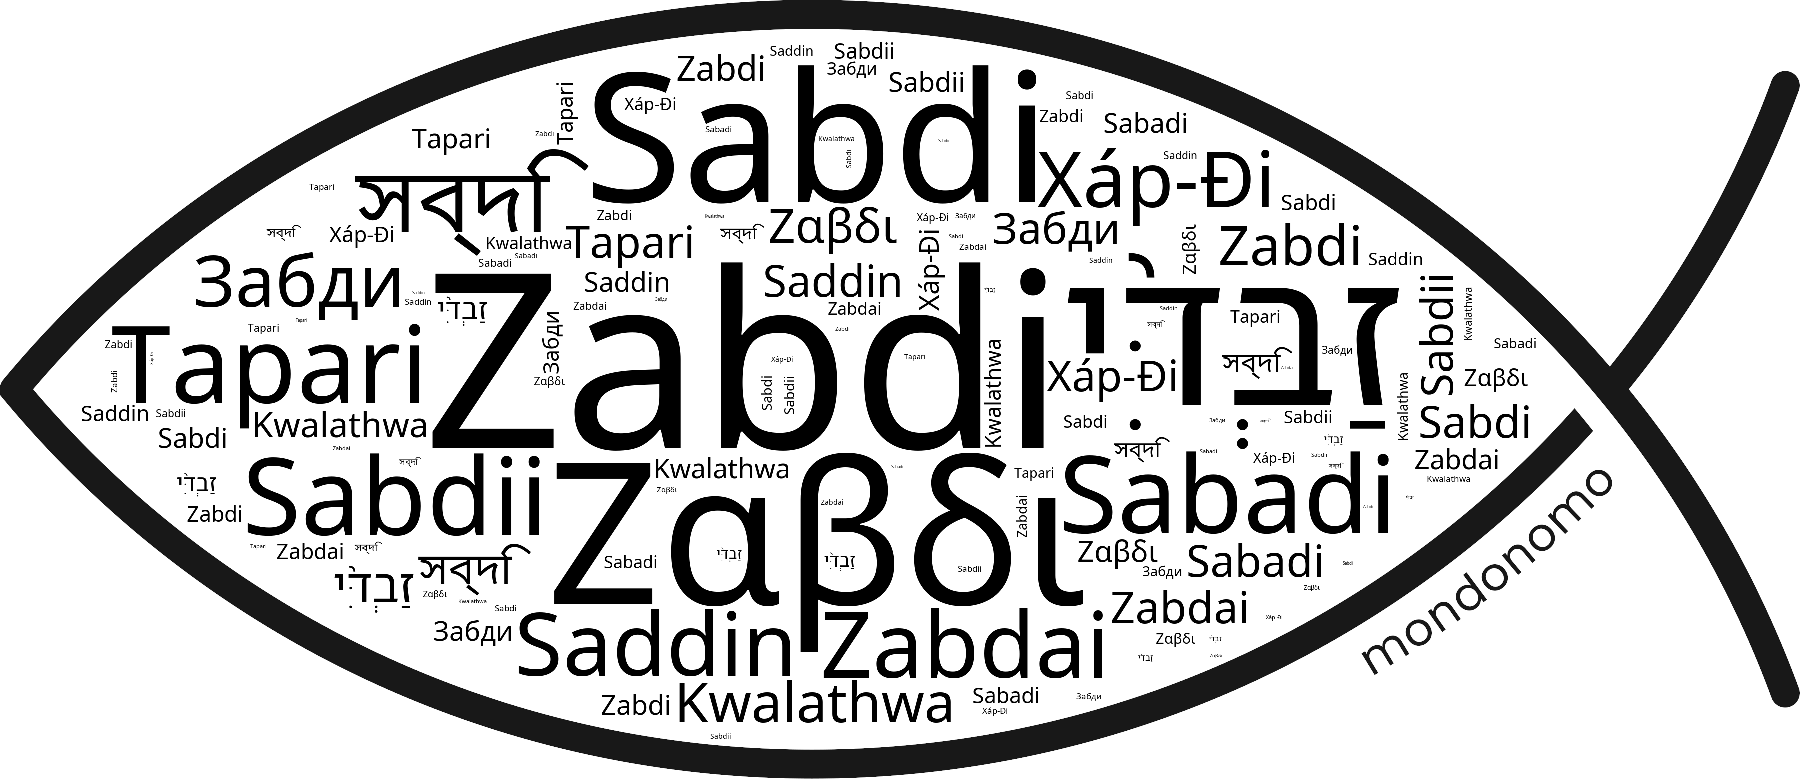 Name Zabdi in the world's Bibles